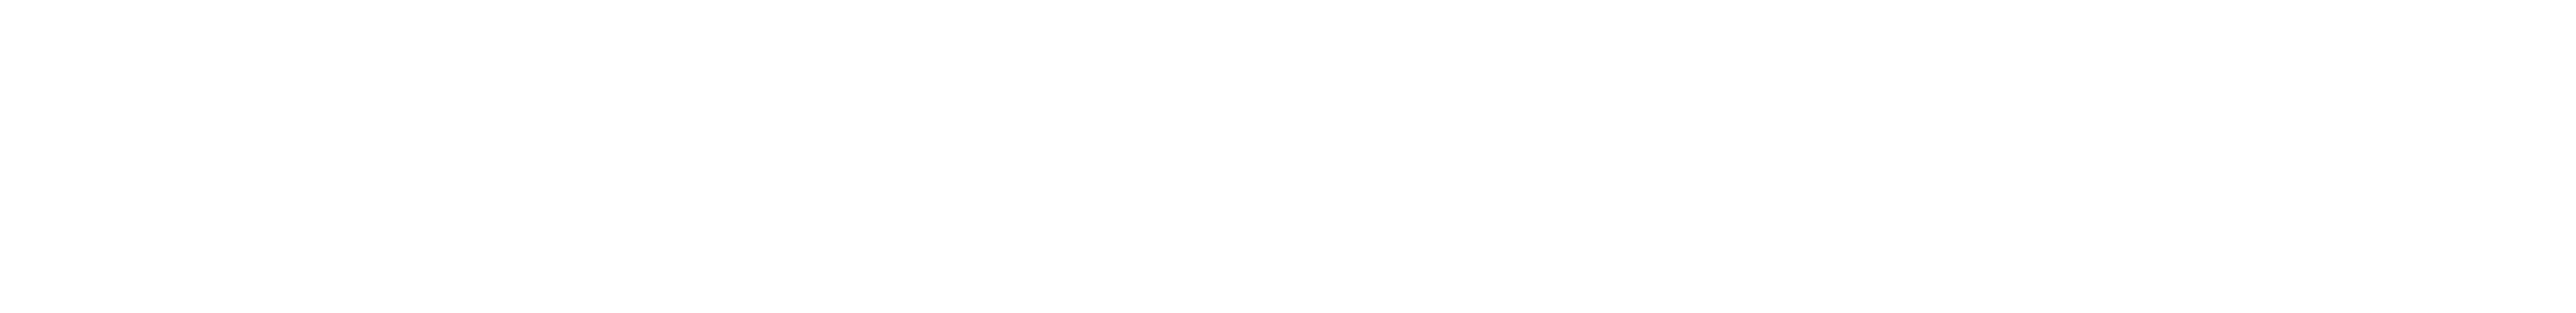 BringWynonnaHome White Logo